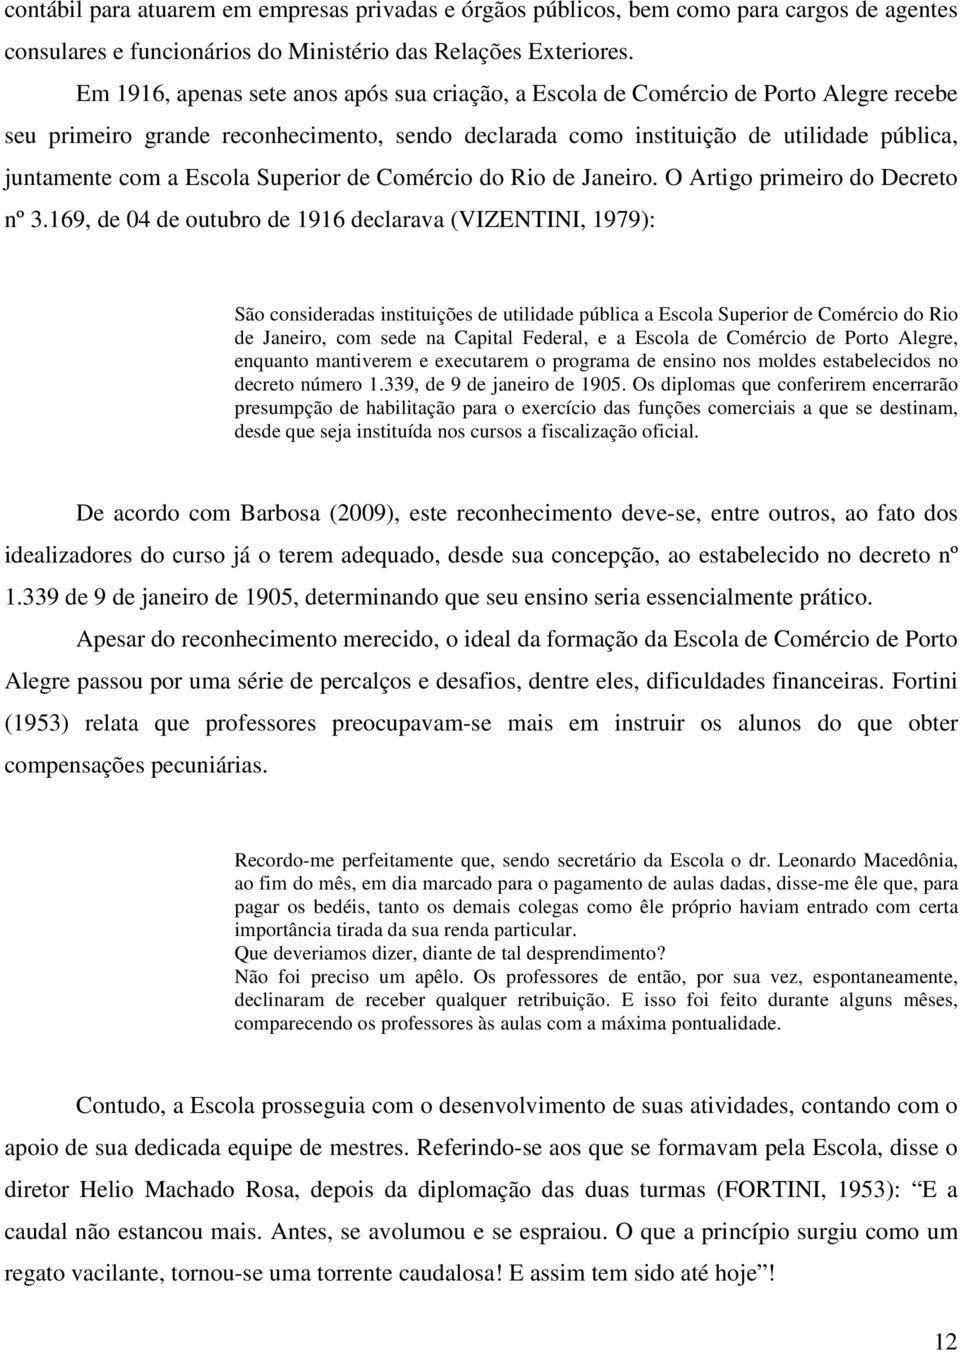 Escola Superior de Comércio do Rio de Janeiro. O Artigo primeiro do Decreto nº 3.